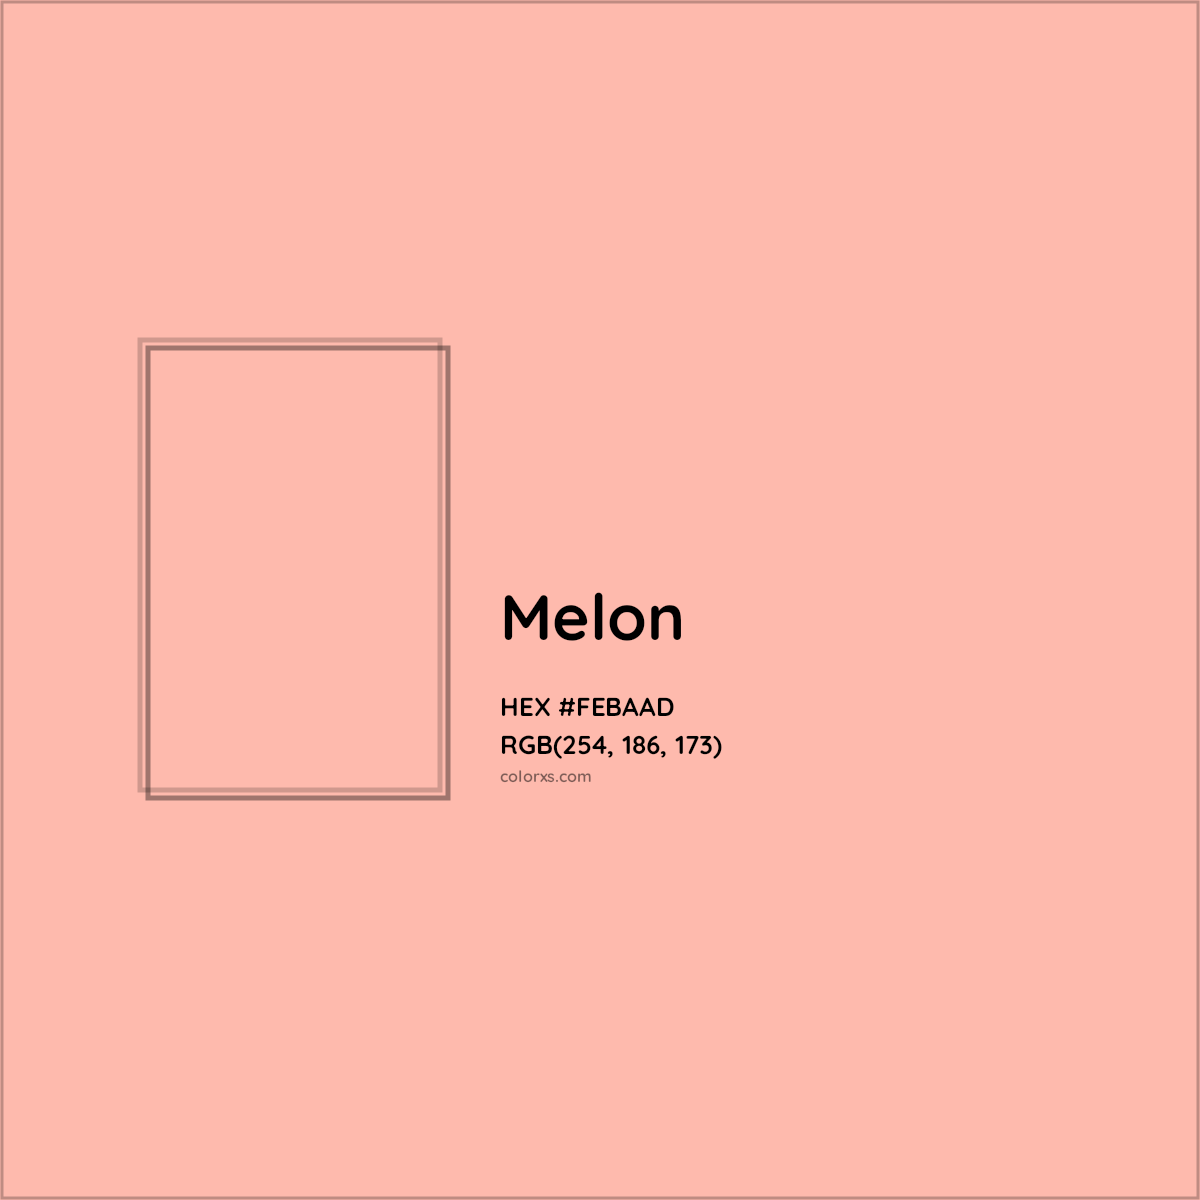 HEX #FEBAAD Melon Color Crayola Crayons - Color Code